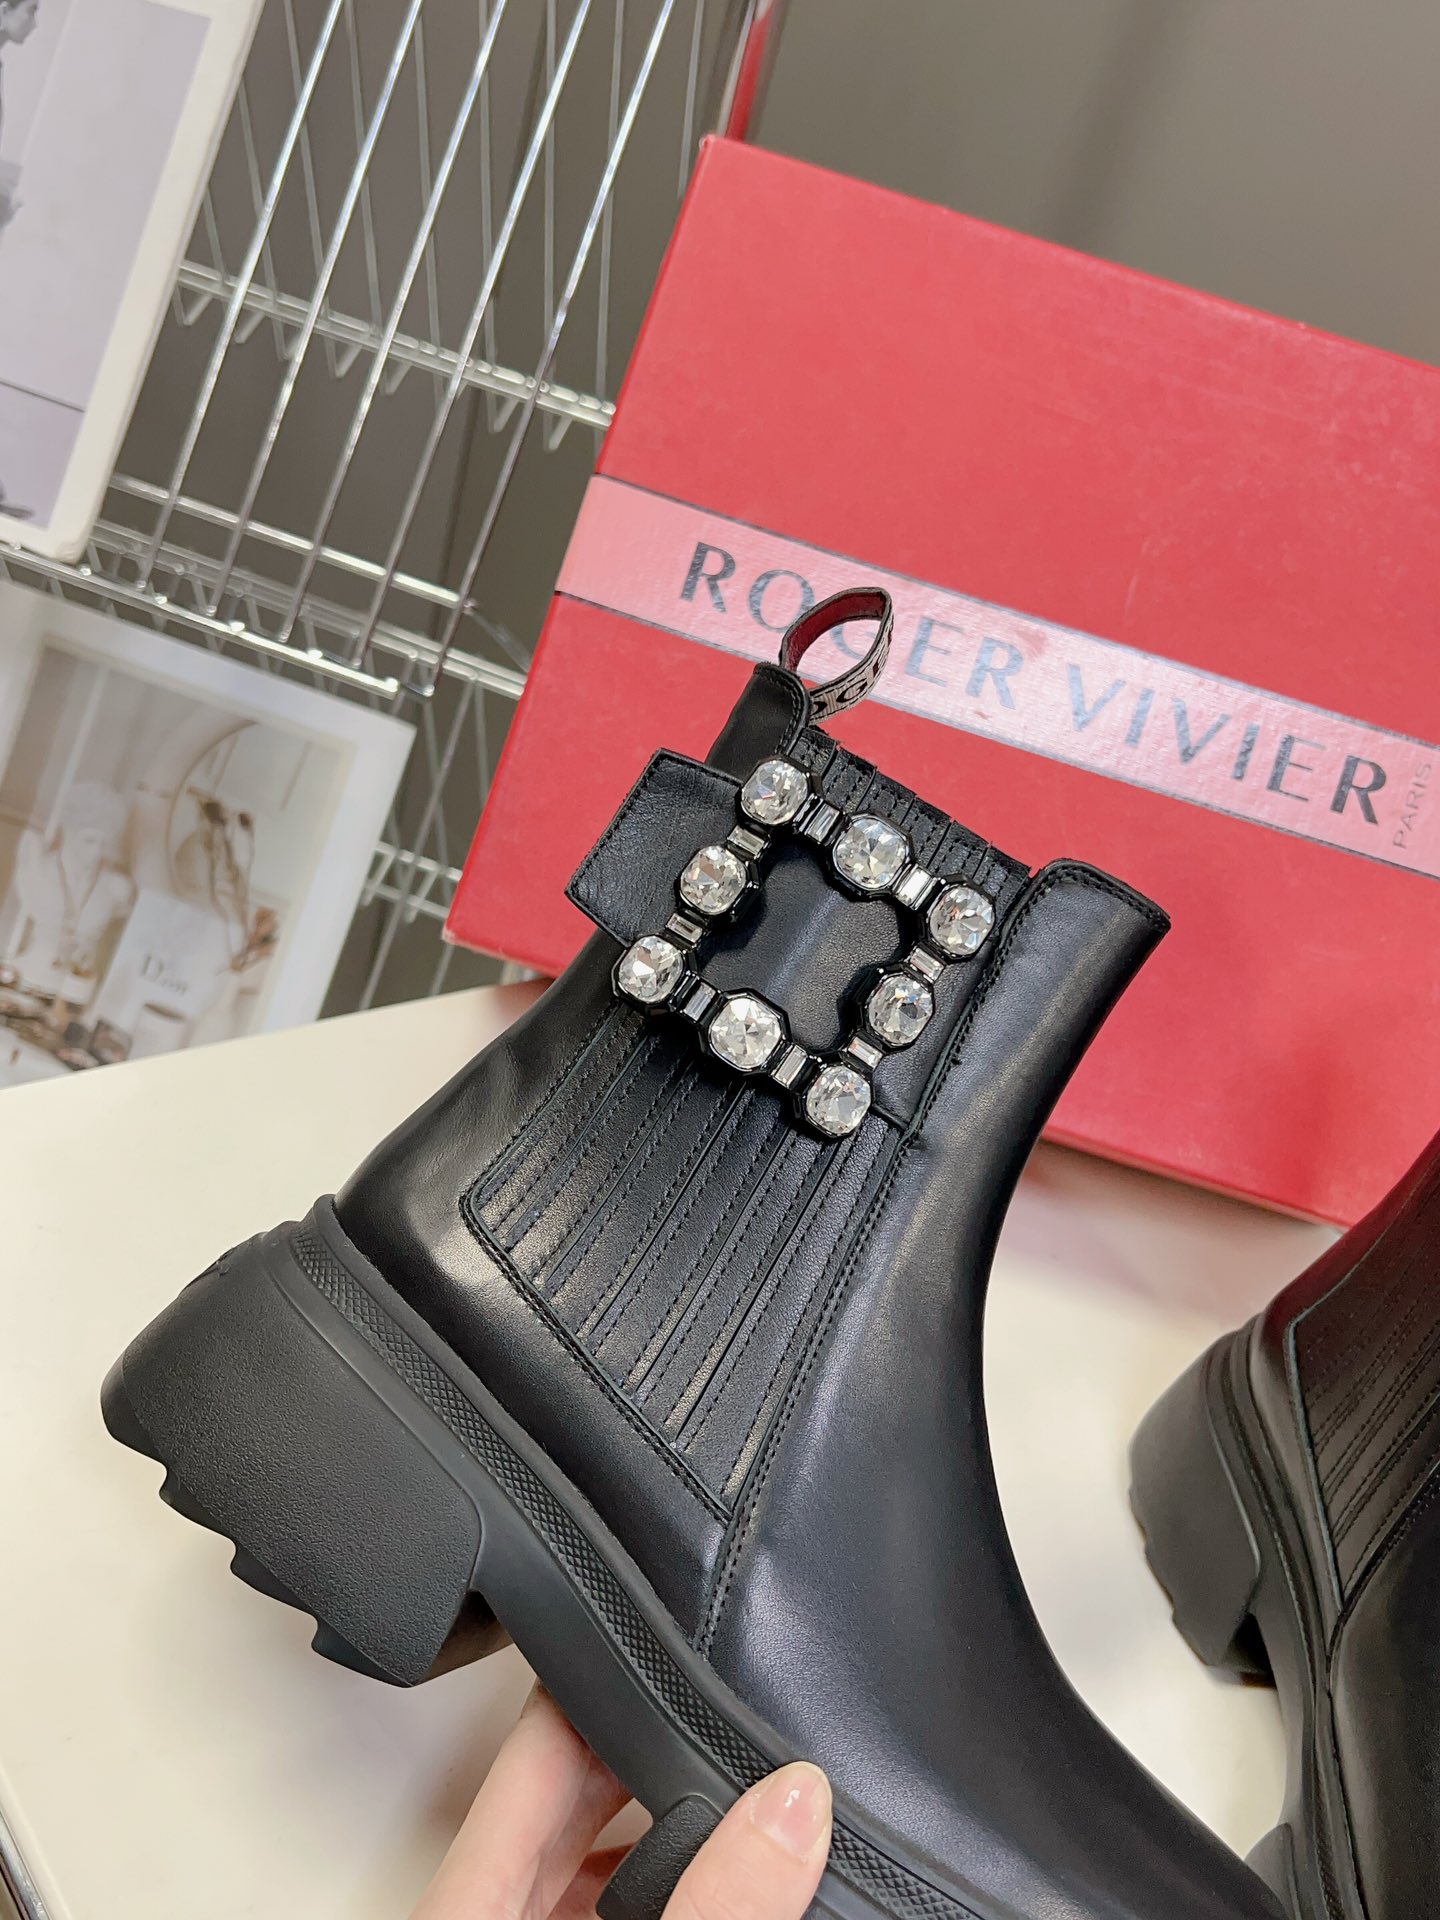 Rogervivier简约设计真的可以永不过时轮廓感展示了腹肌的通透感满满的纯欲风每一双鞋子都散发着浓浓